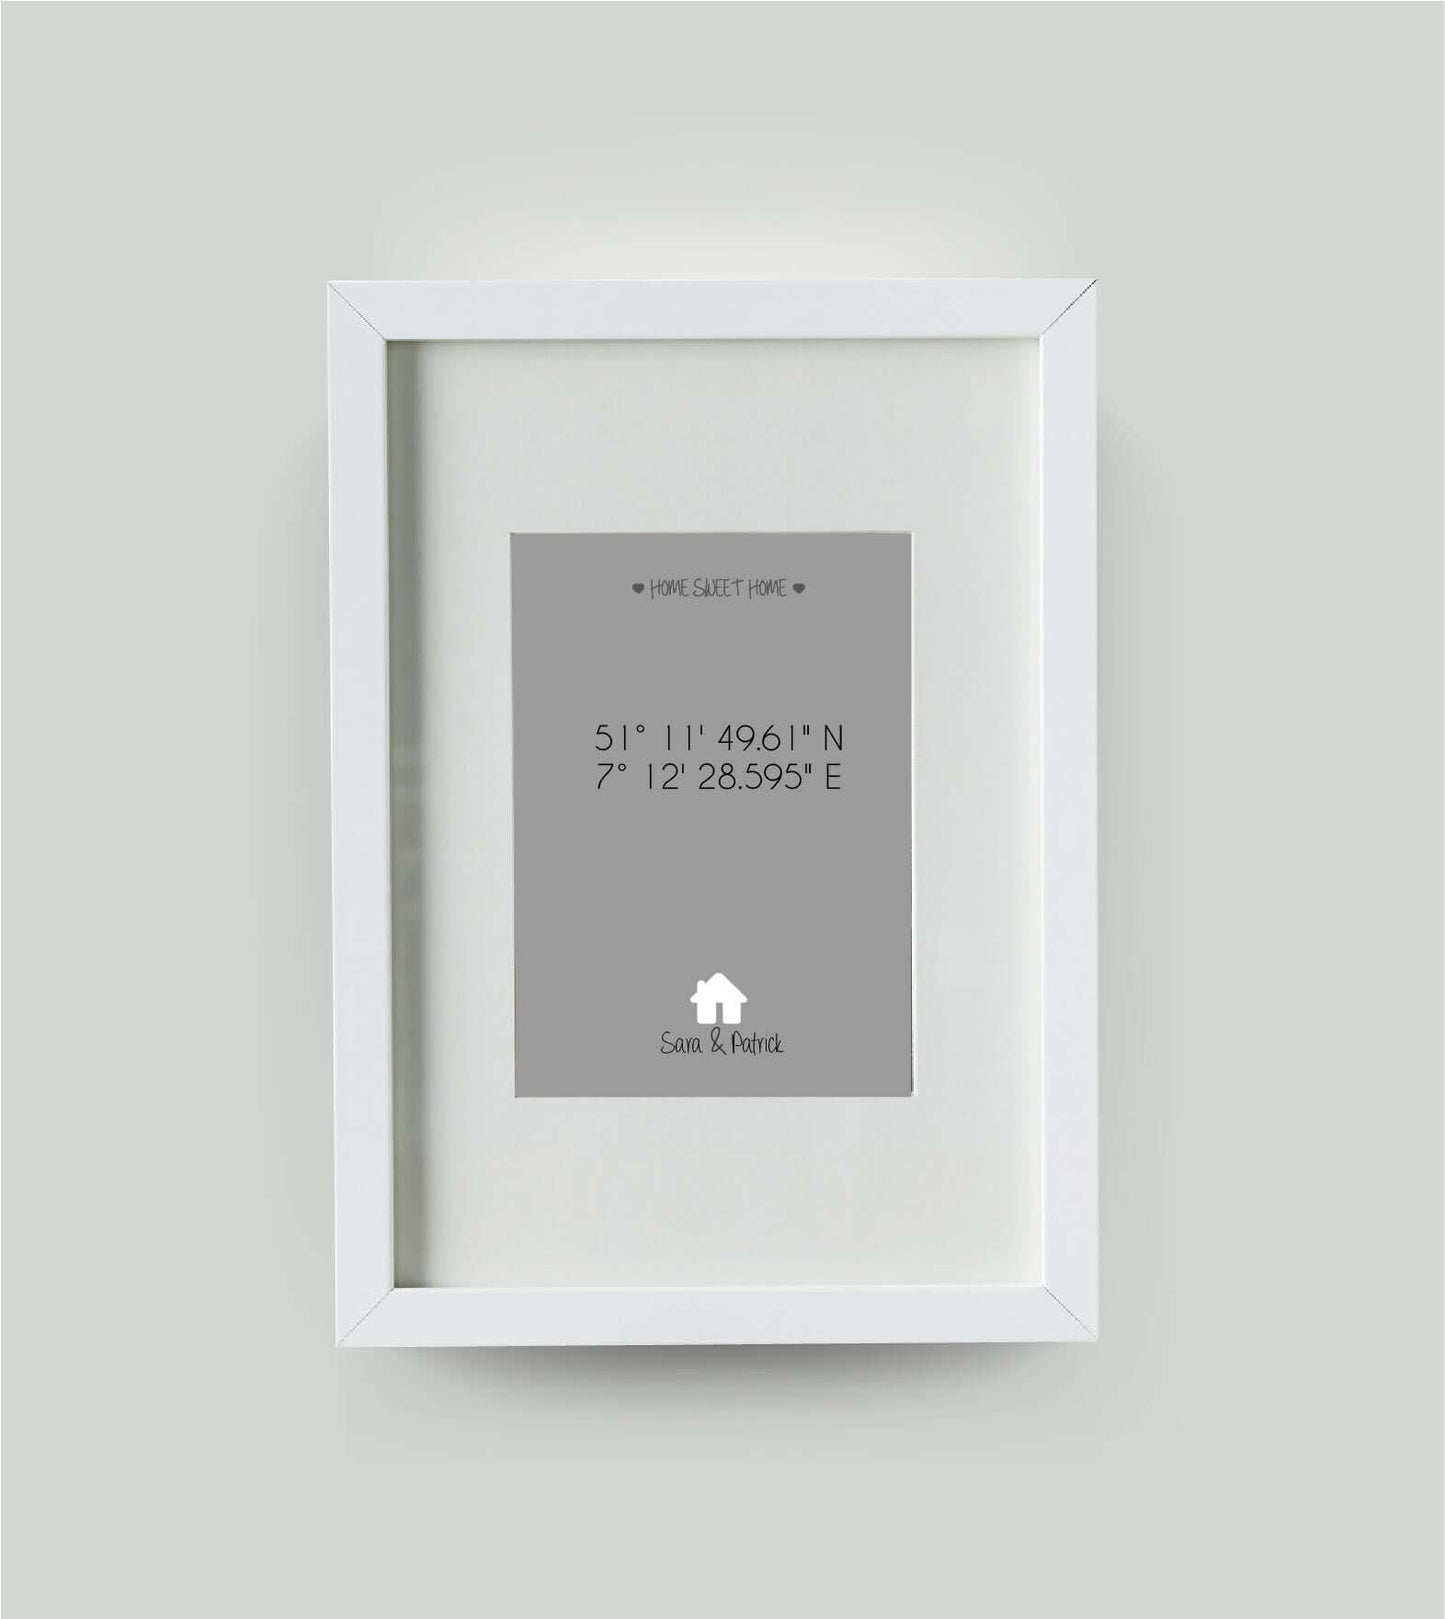 Personalisiertes Bild "HOME SWEET HOME HAUS" in grau, 13x18cm, mit Rahmen weiß 21x30cm, mit Passepartout